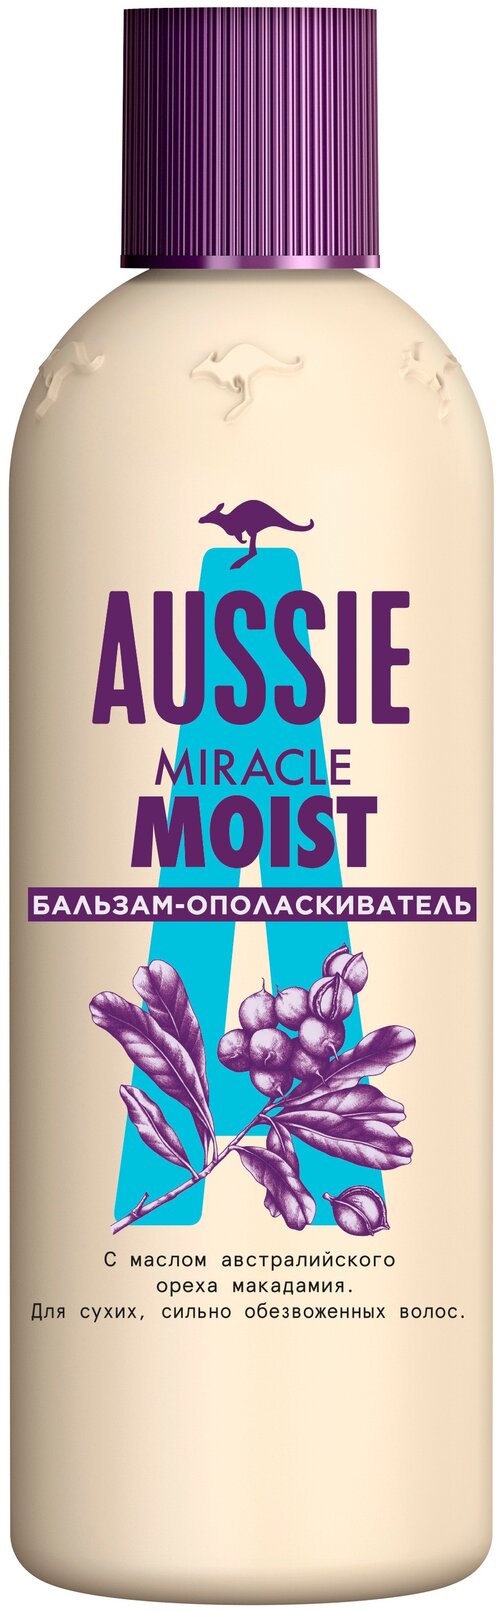 Aussie бальзам-ополаскиватель Miracle Moist с маслом ореха макадамия для сухих волос, 90 мл